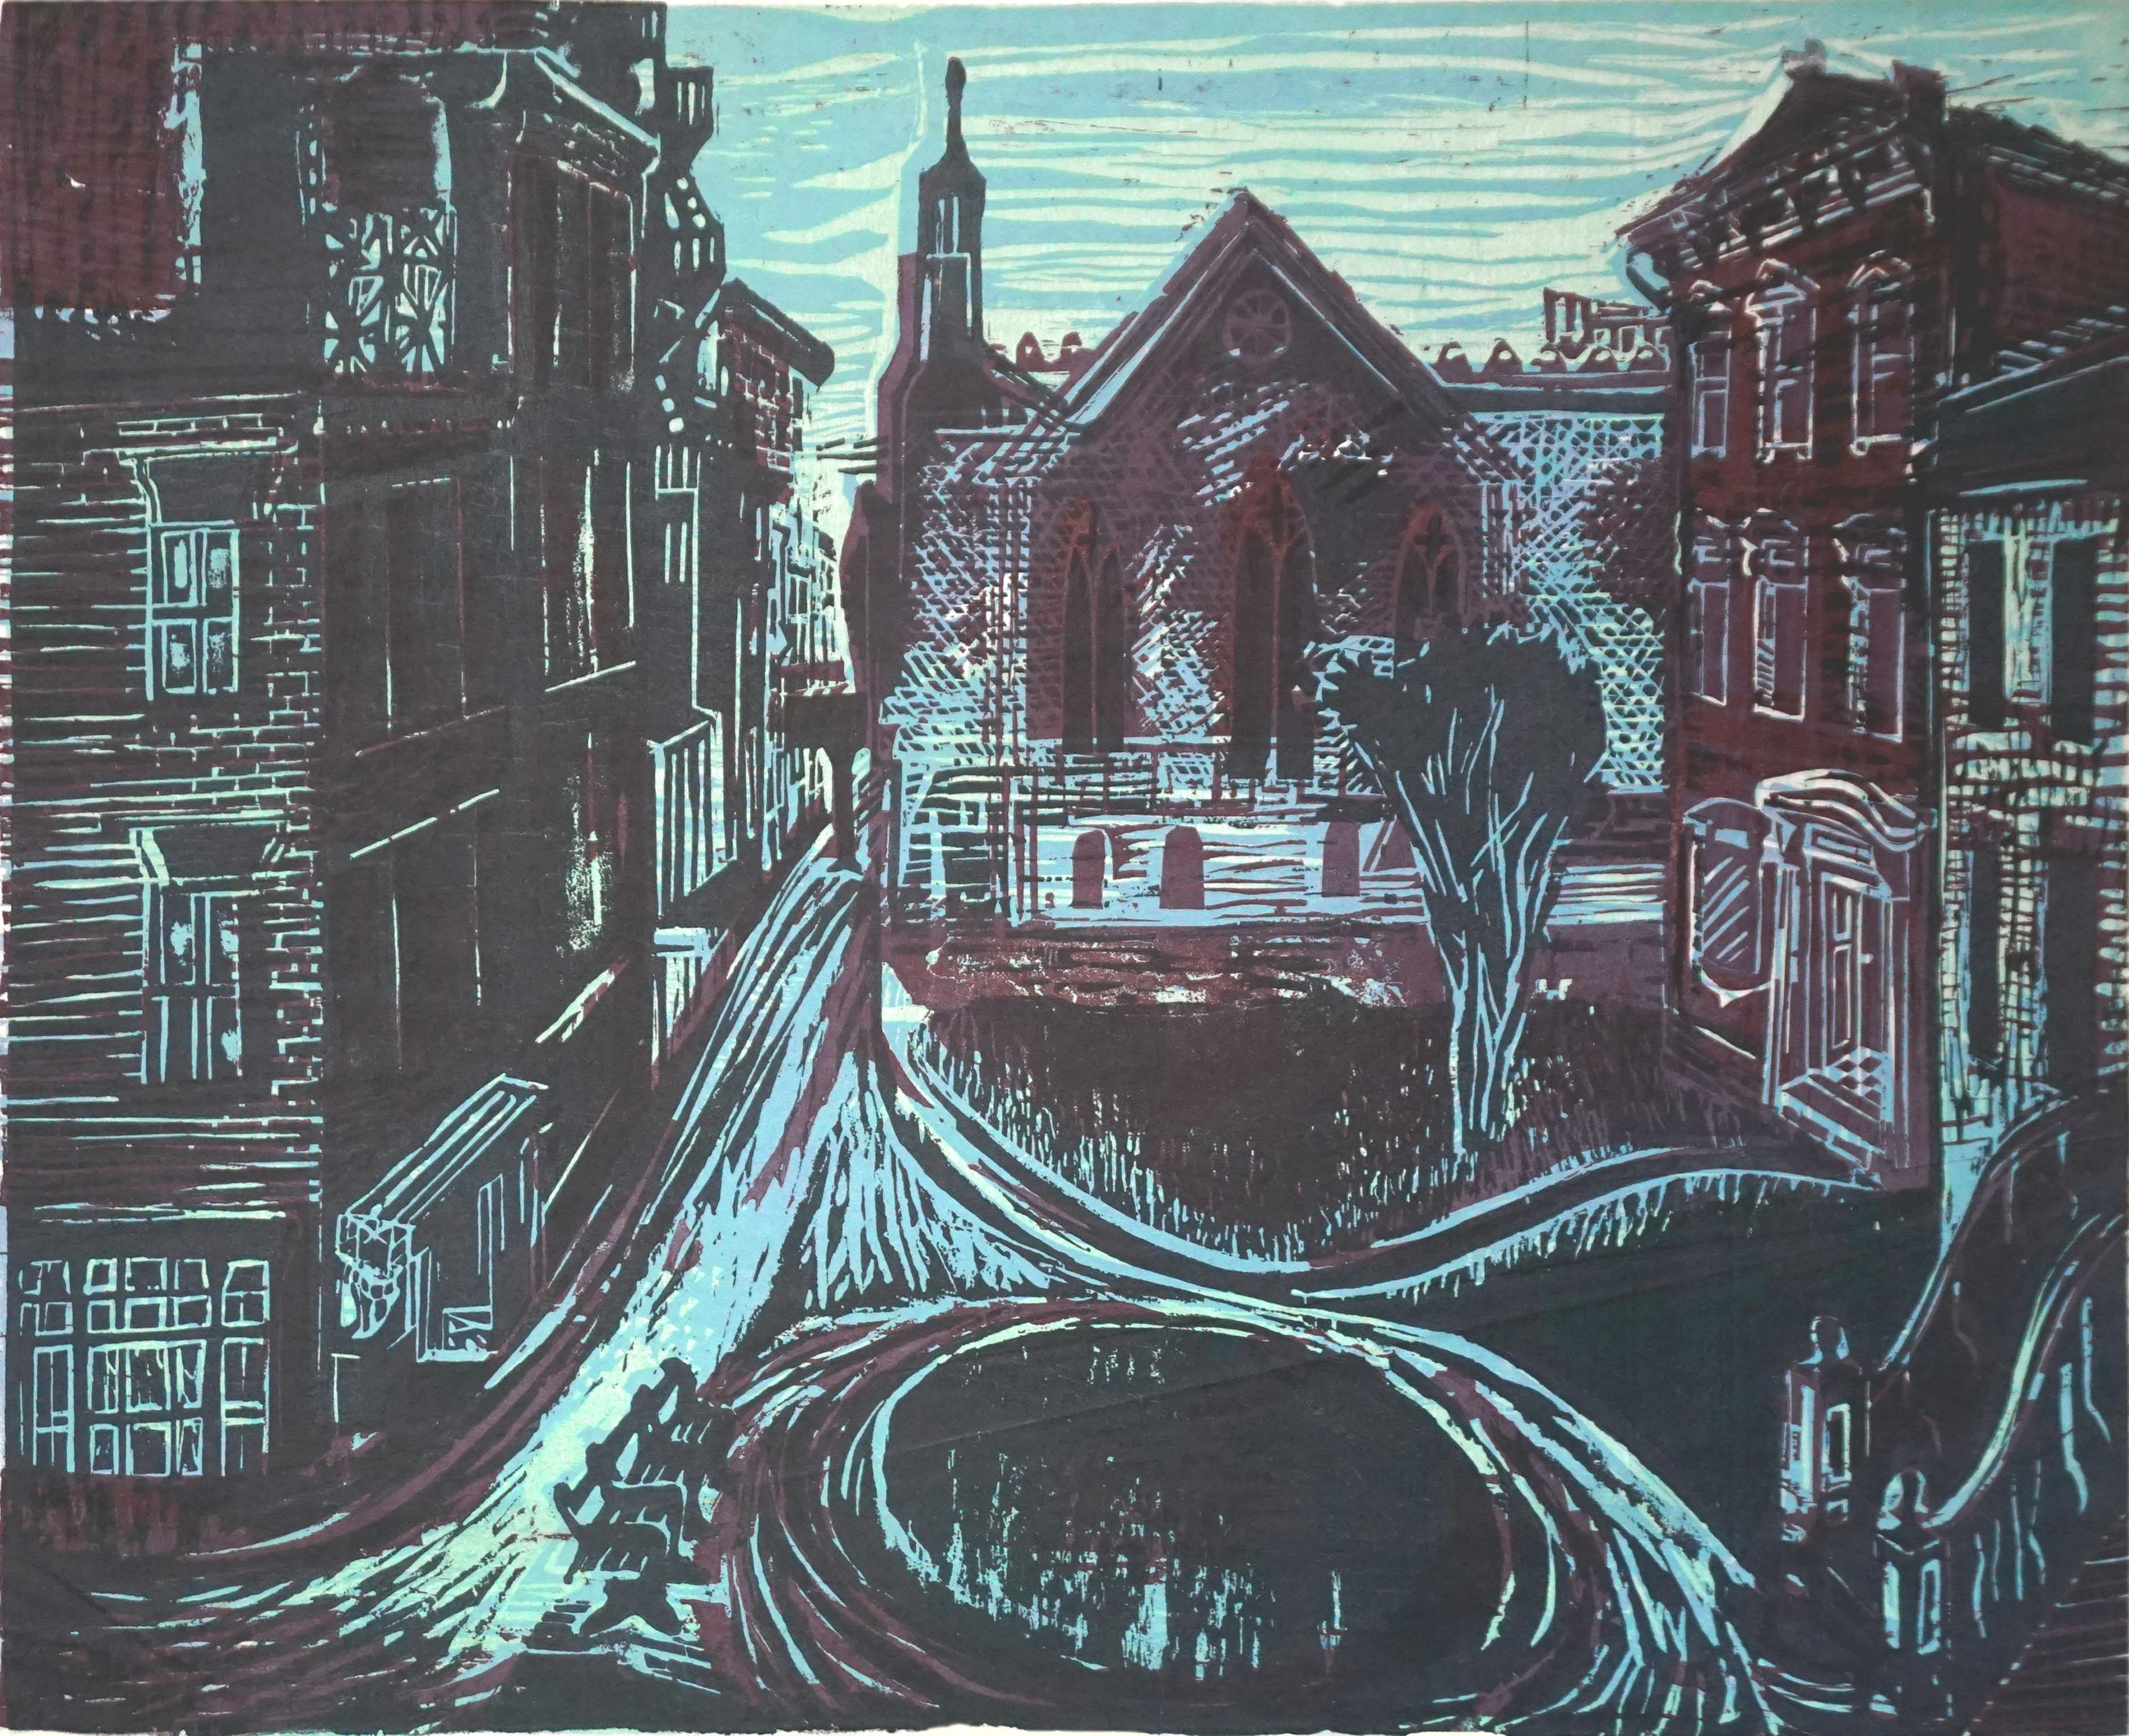 Nachtaufgang-Holzschnitt, 1939 – Print von Ruth Chaney